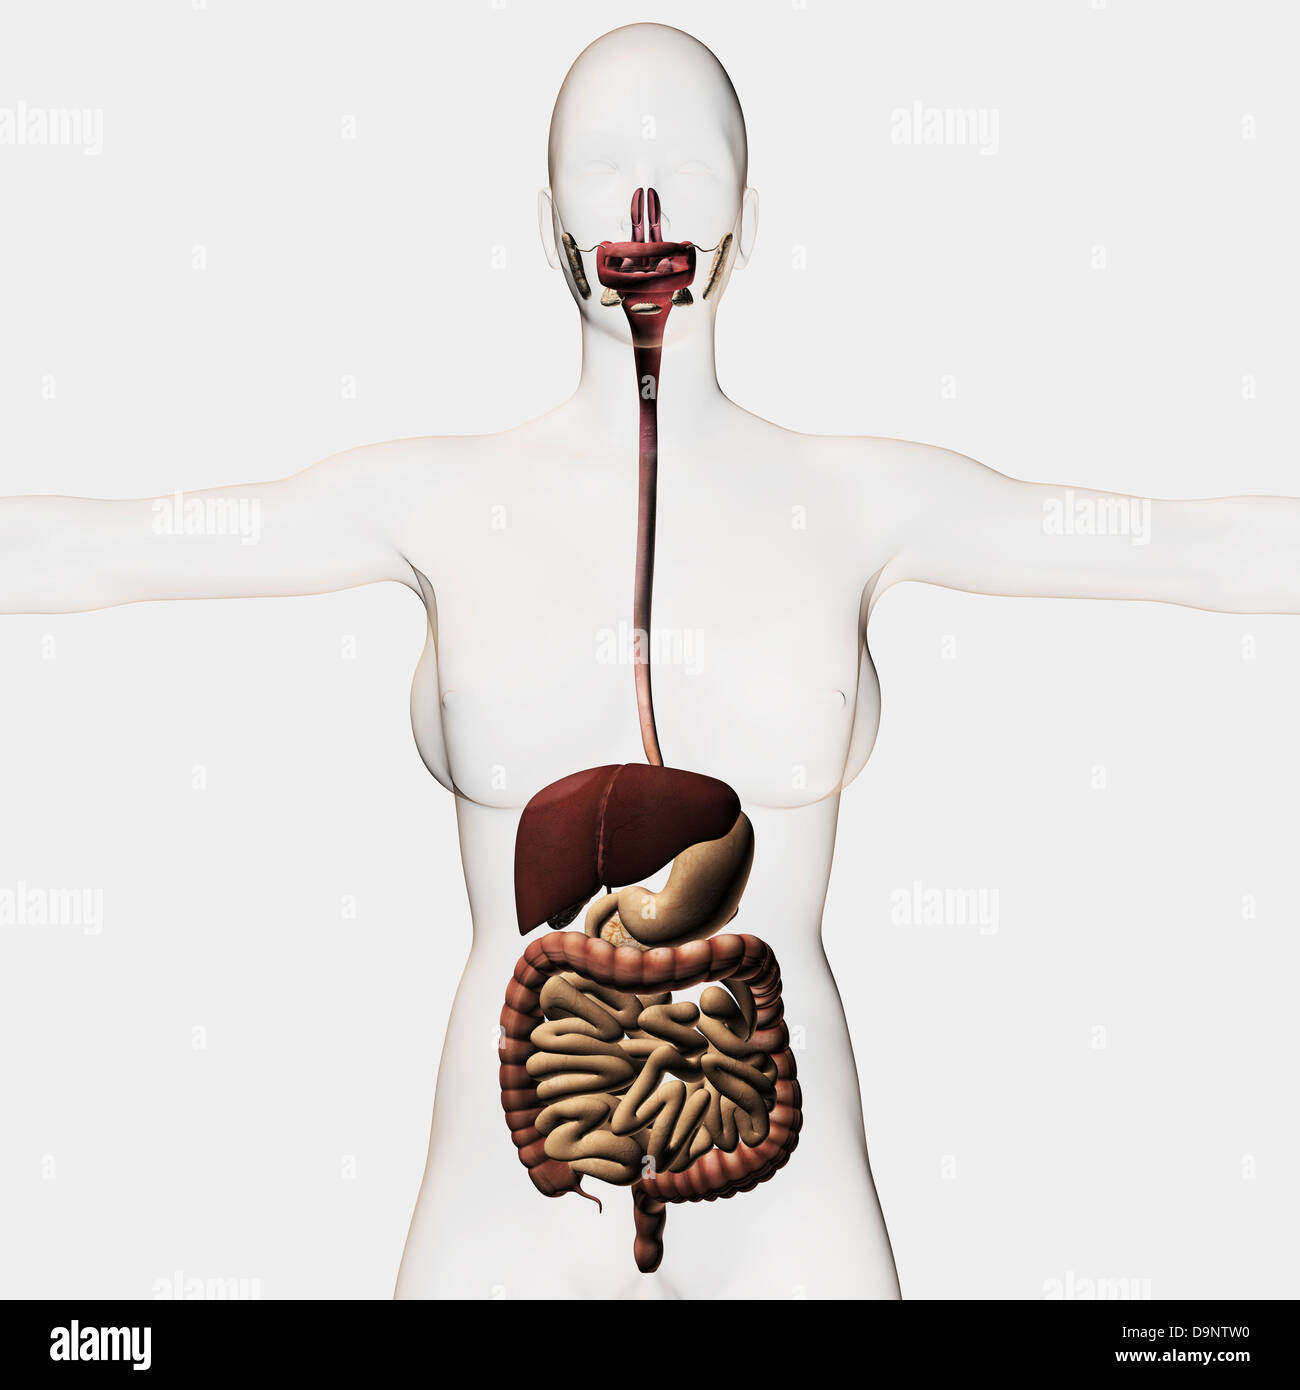 Illustrazione medica dell'apparato digestivo umano, vista tridimensionale. Foto Stock